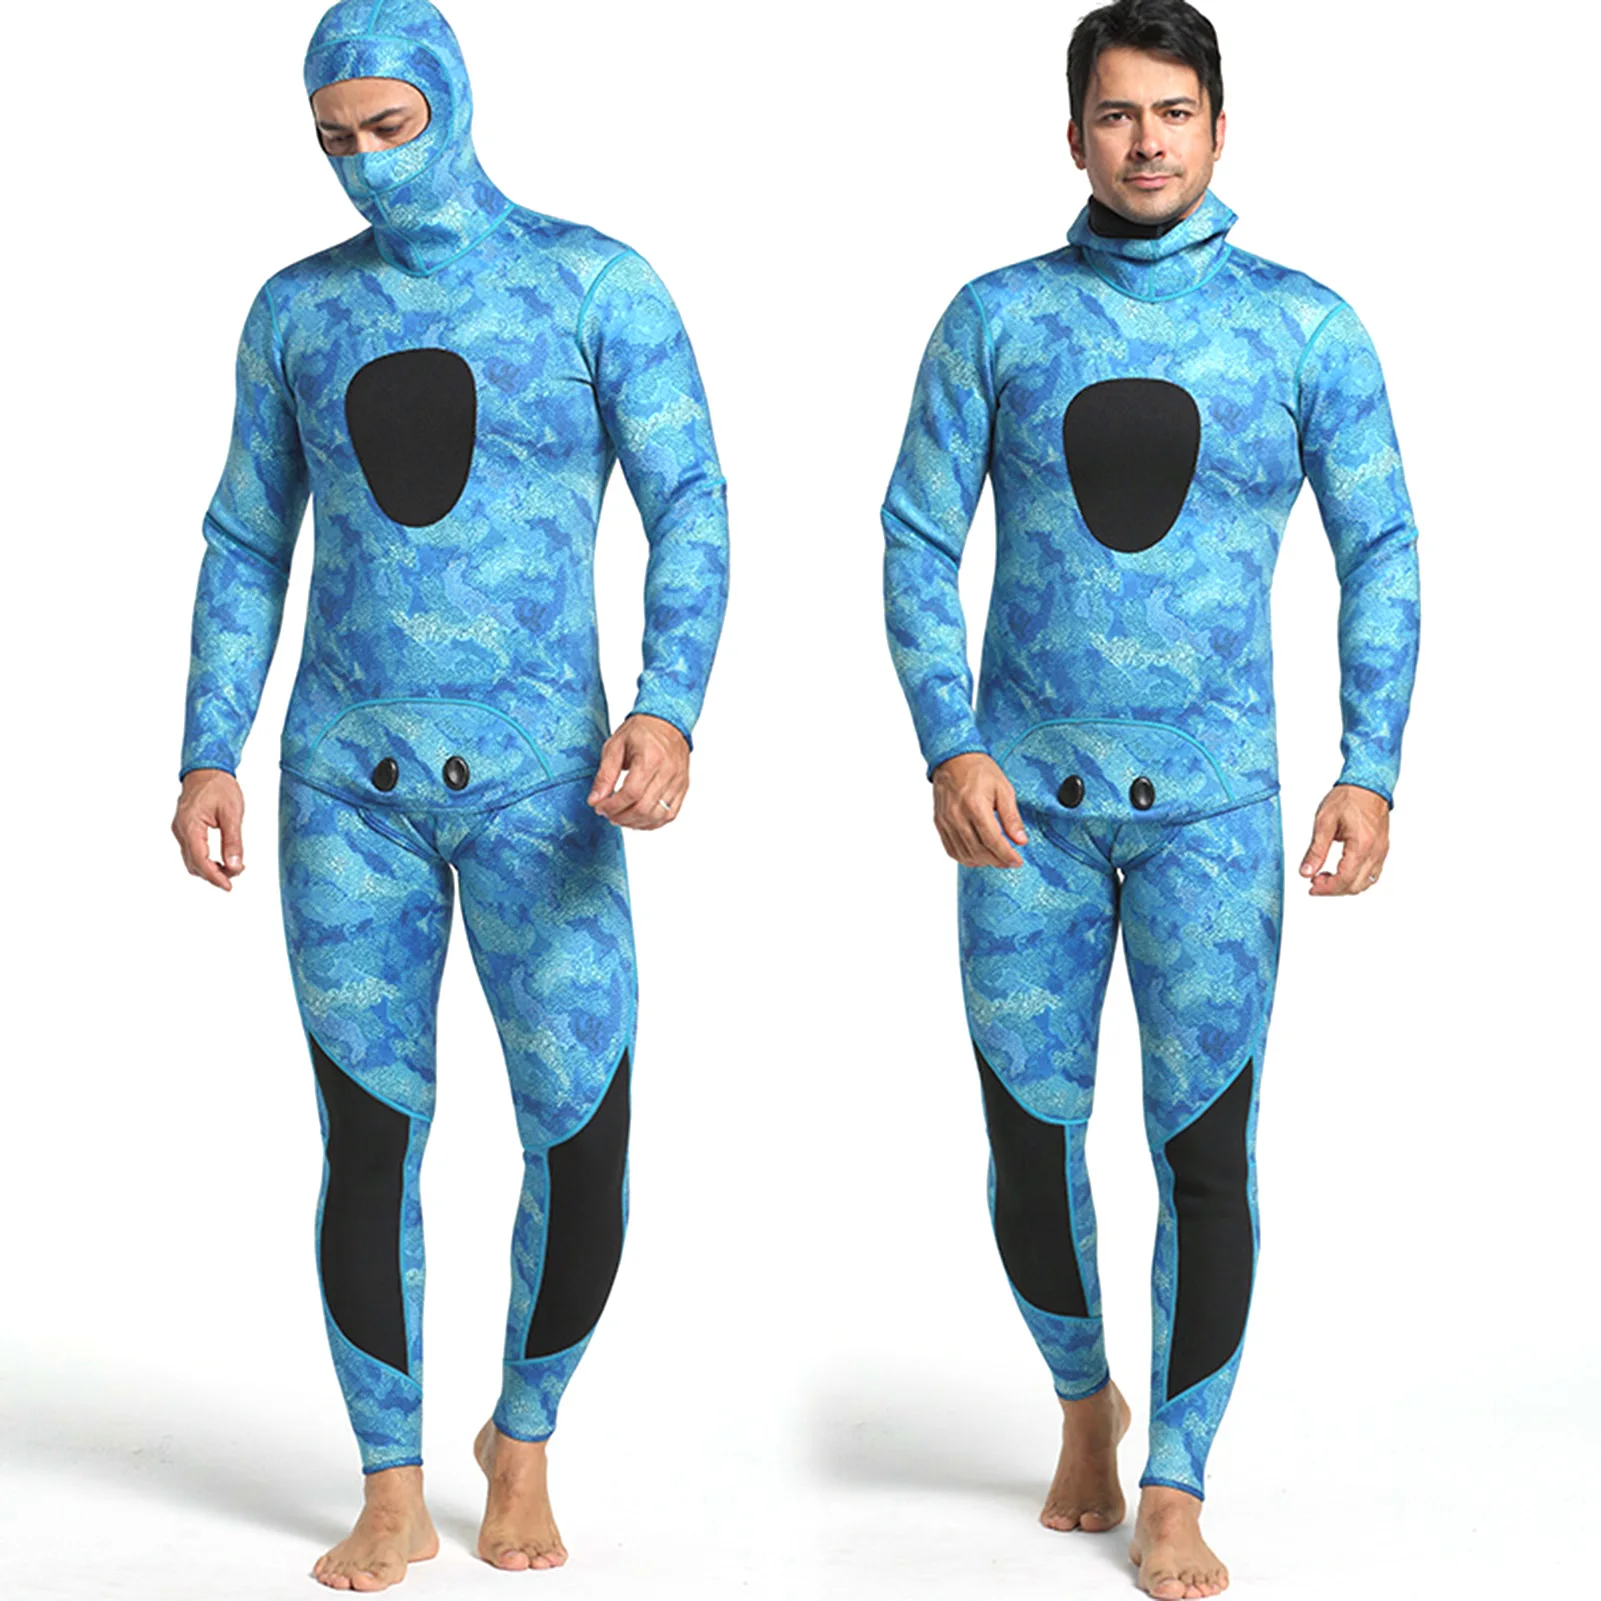 

2 предмета в комплекте Для мужчин 3 мм неопрена Плавание Гидрокостюмы мокрого типа с капюшоном длинный рукав гидрокостюм для подводное плав...